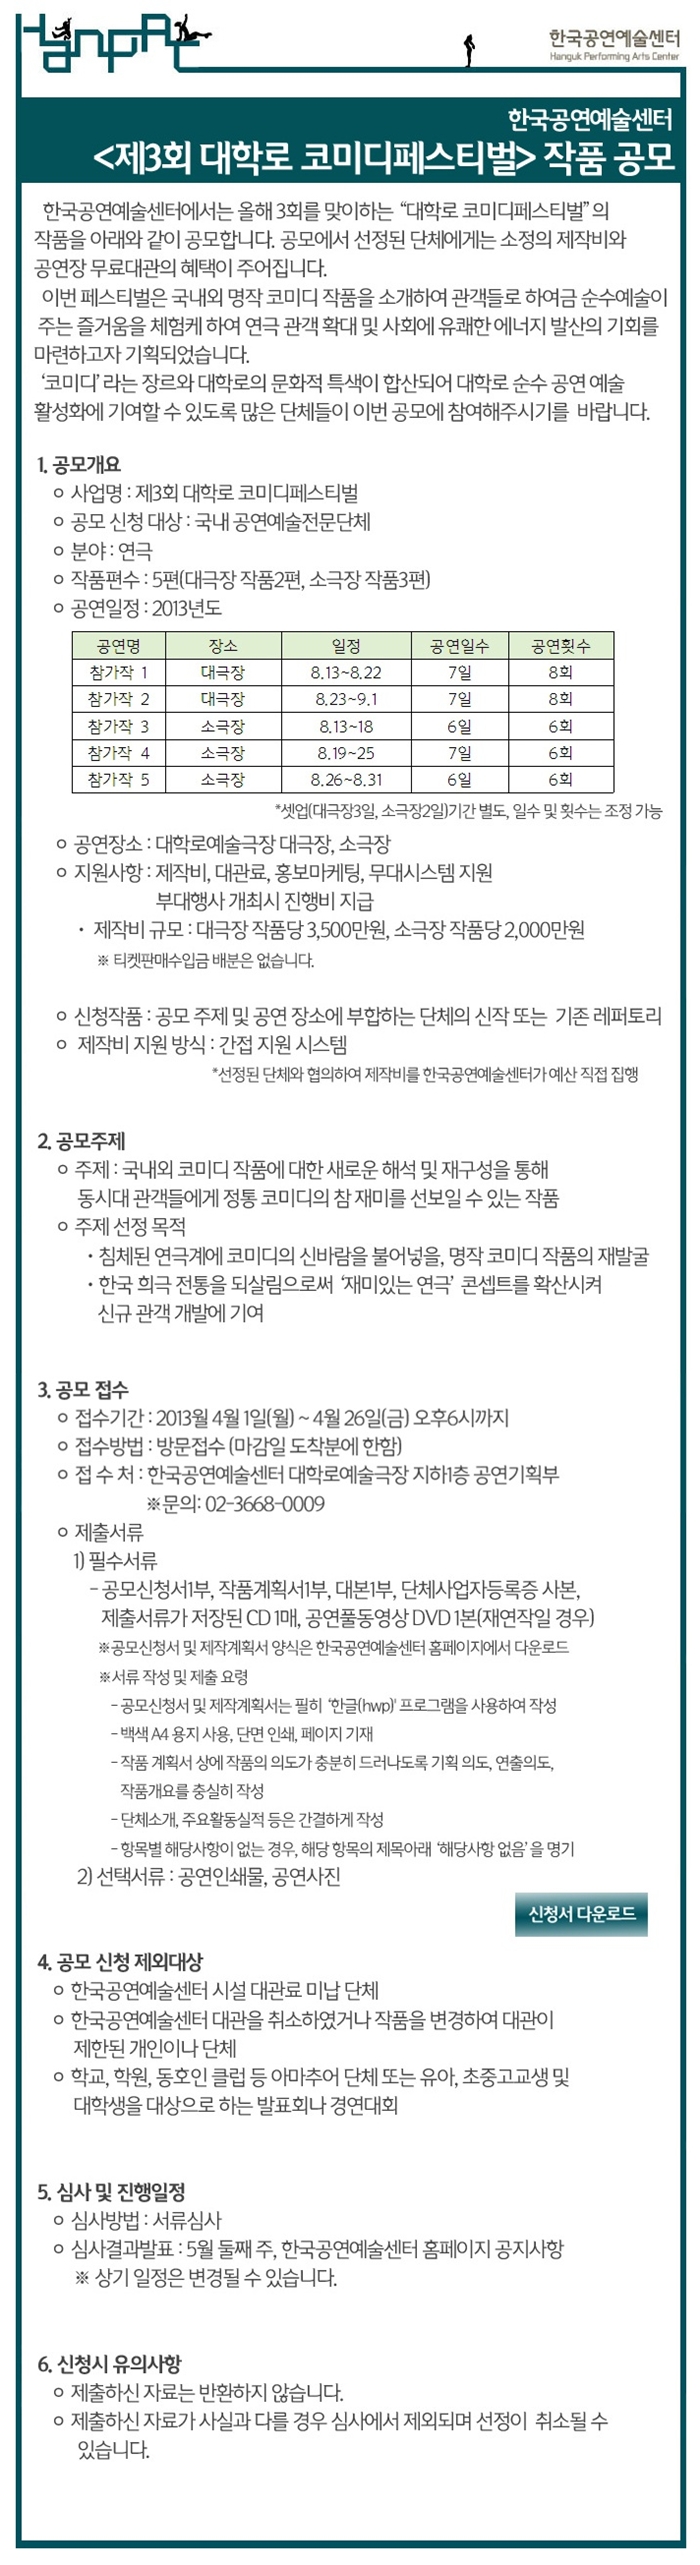 [공모]한국공연예술센터 <제3회 대학로 코미디페스티벌> 작품공모